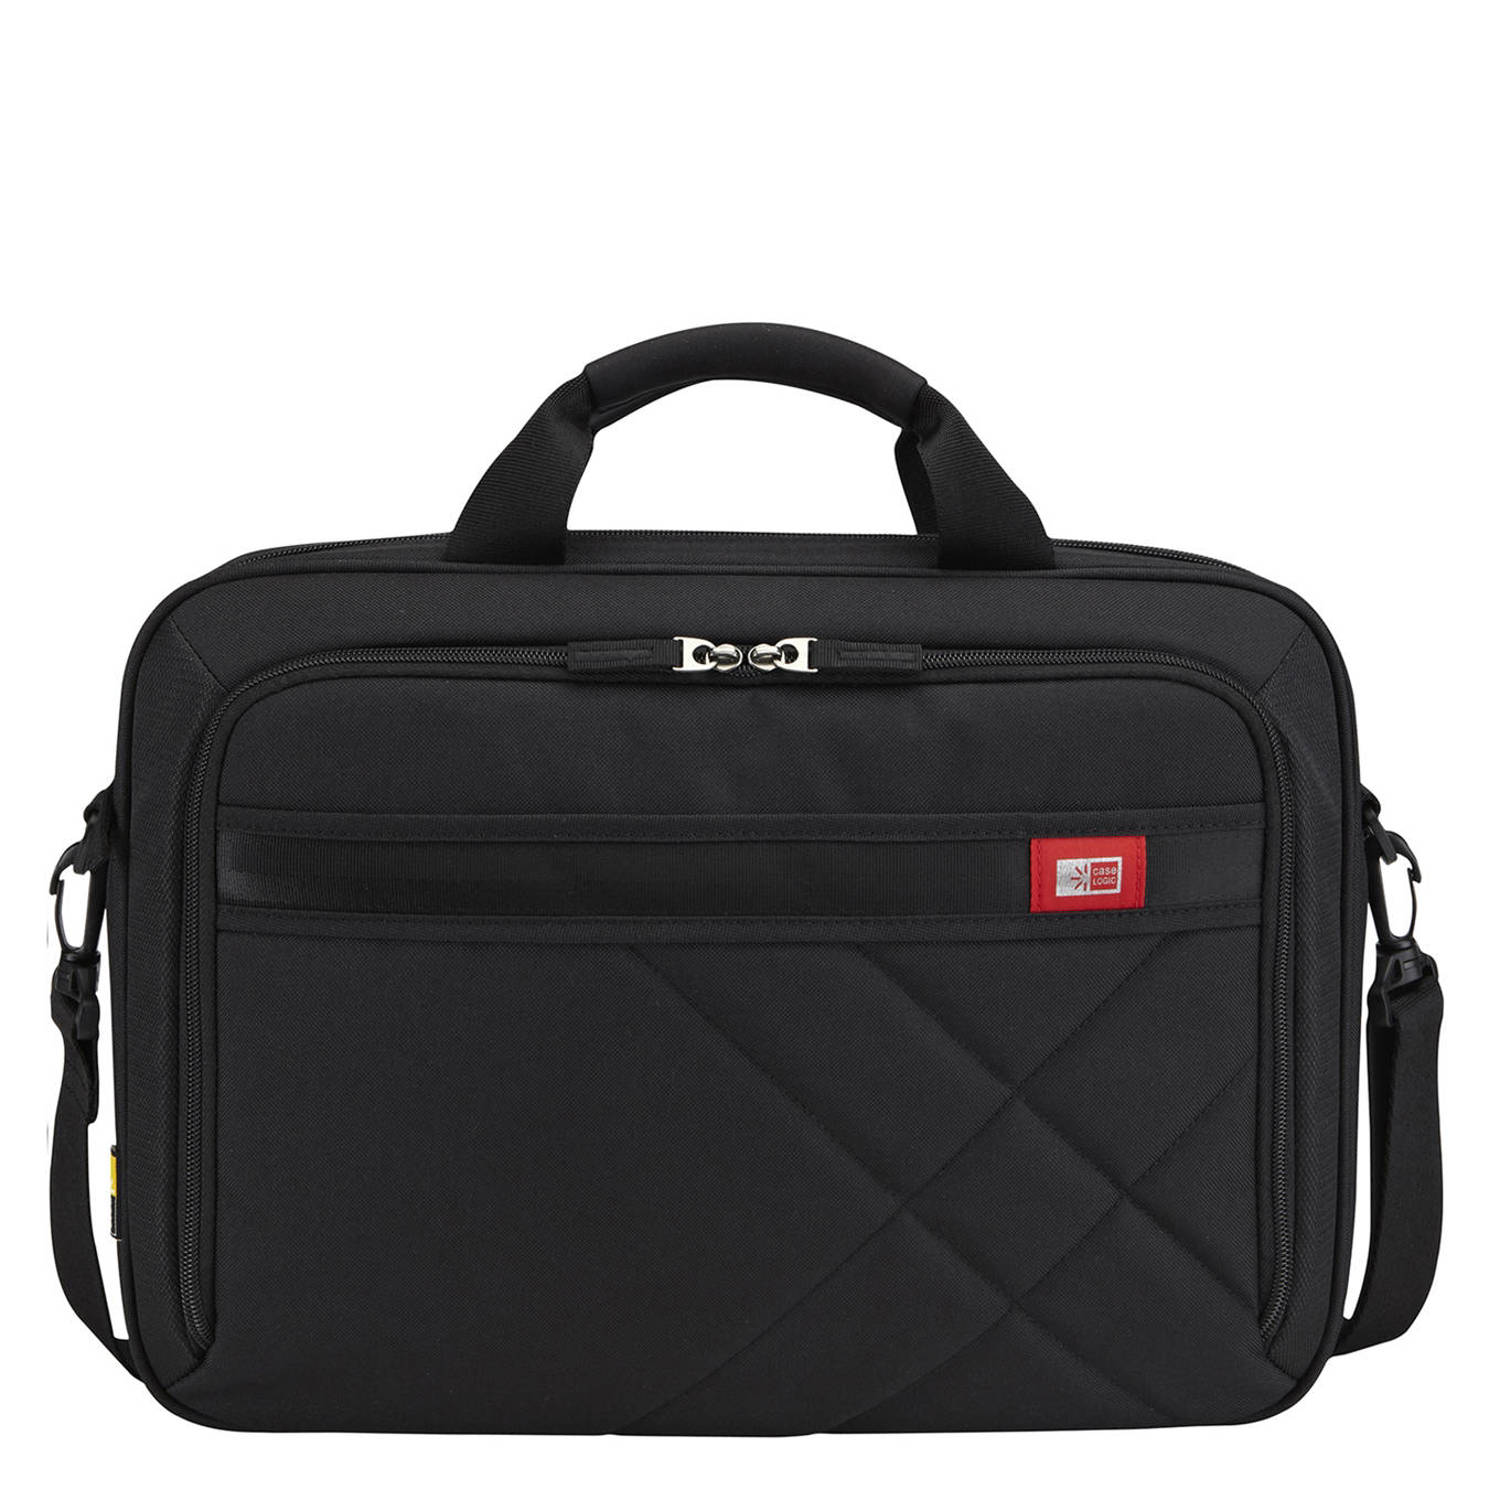 Case Logic 15.6 inch laptoptas Casual zwart